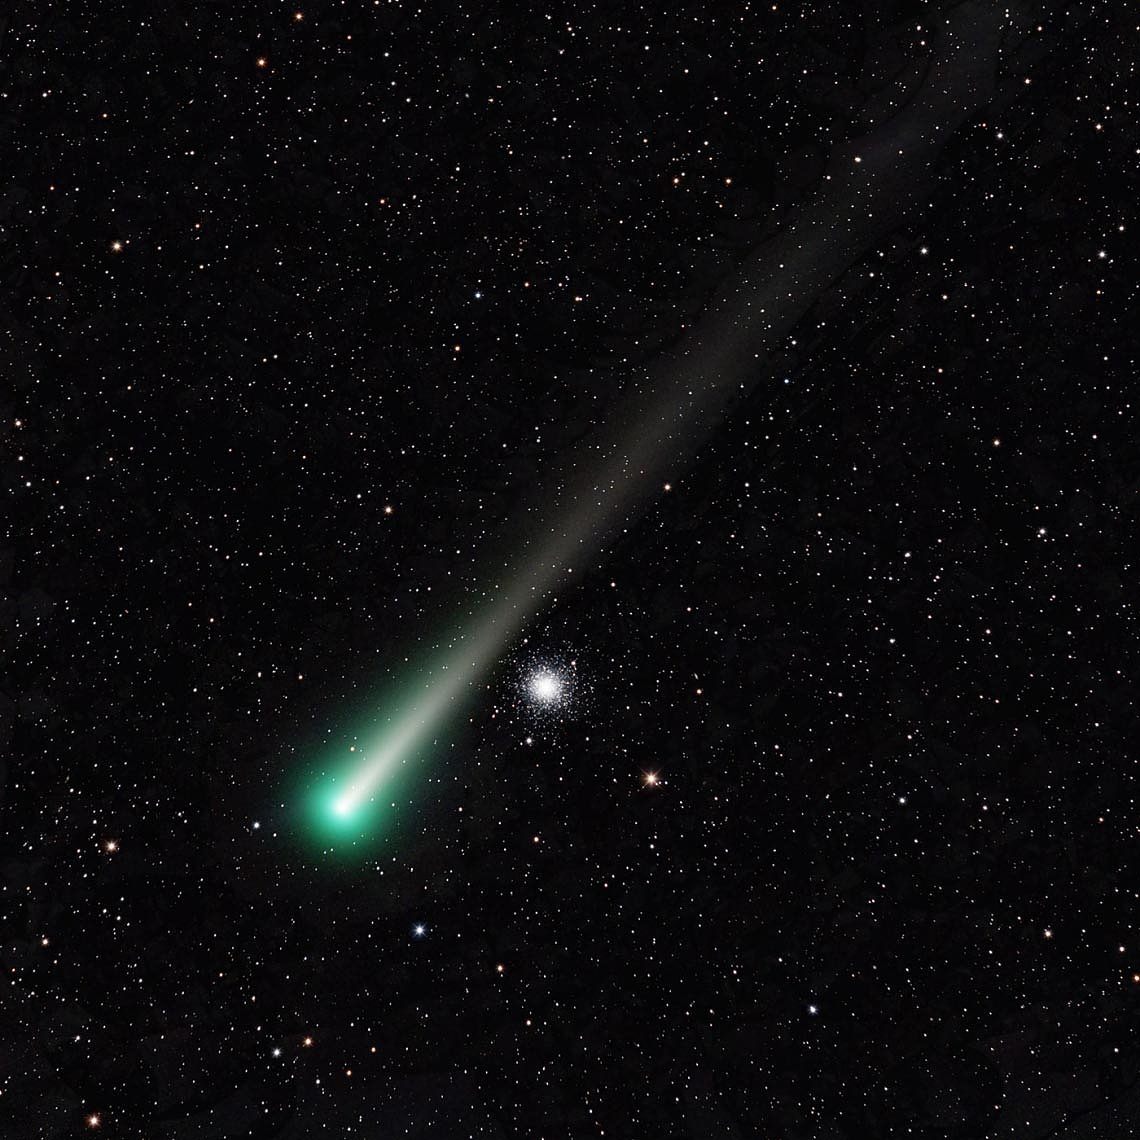 Leonard彗星发现者给出的观测建议 - 1